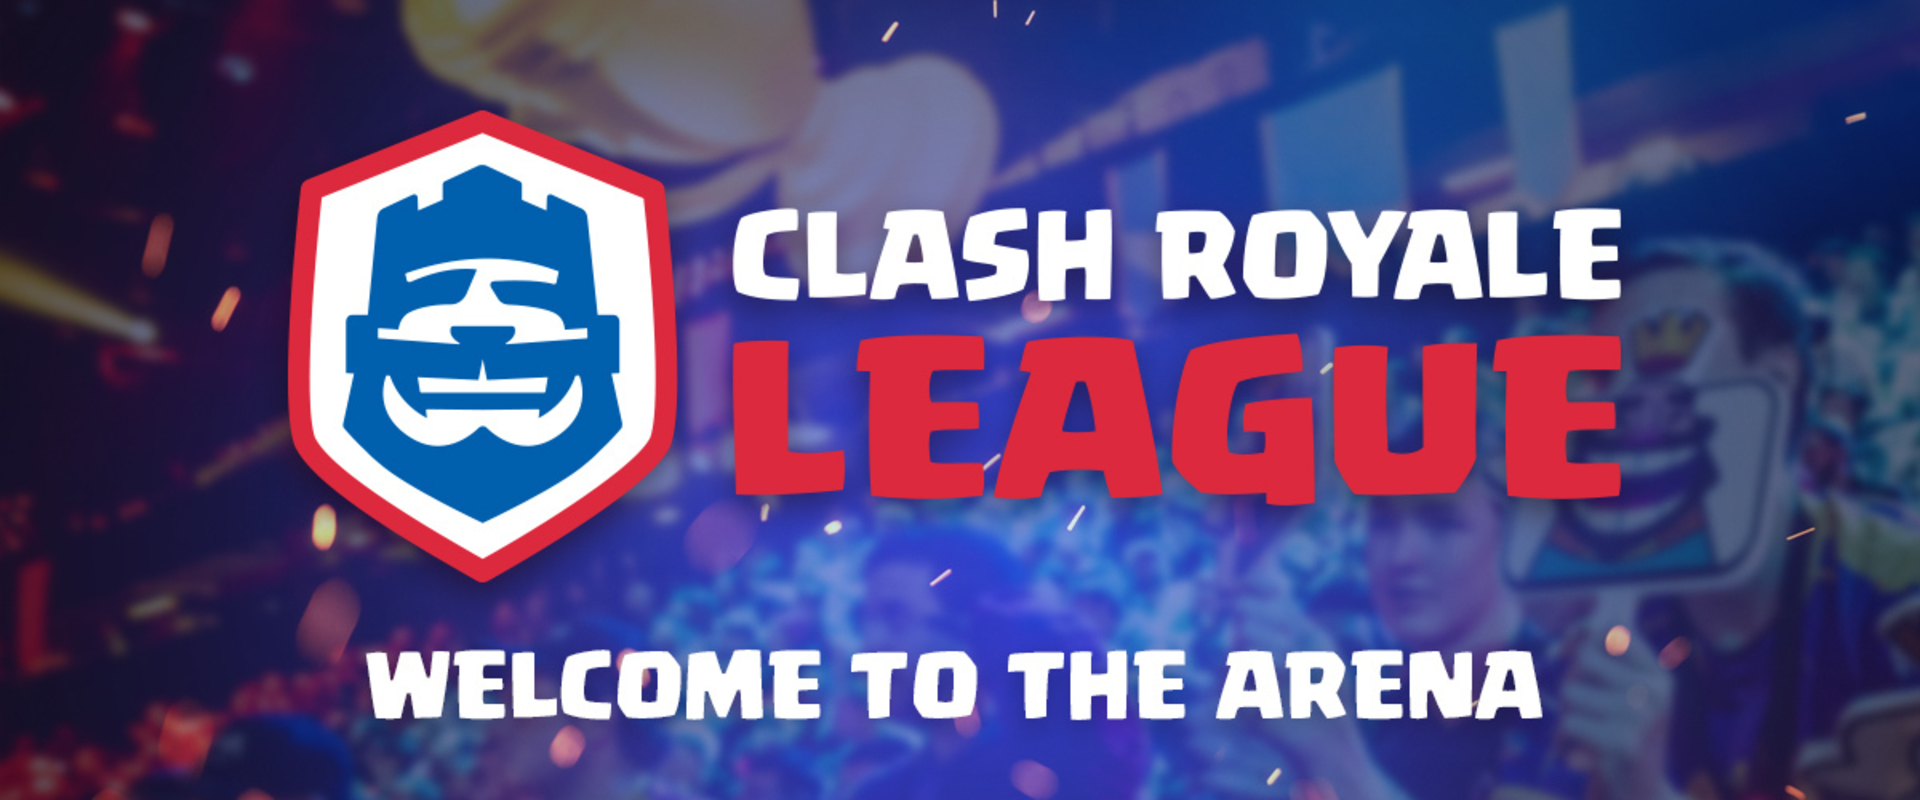 Indul a Clash Royale League, az ajtó ismét mindenki előtt nyitva áll!